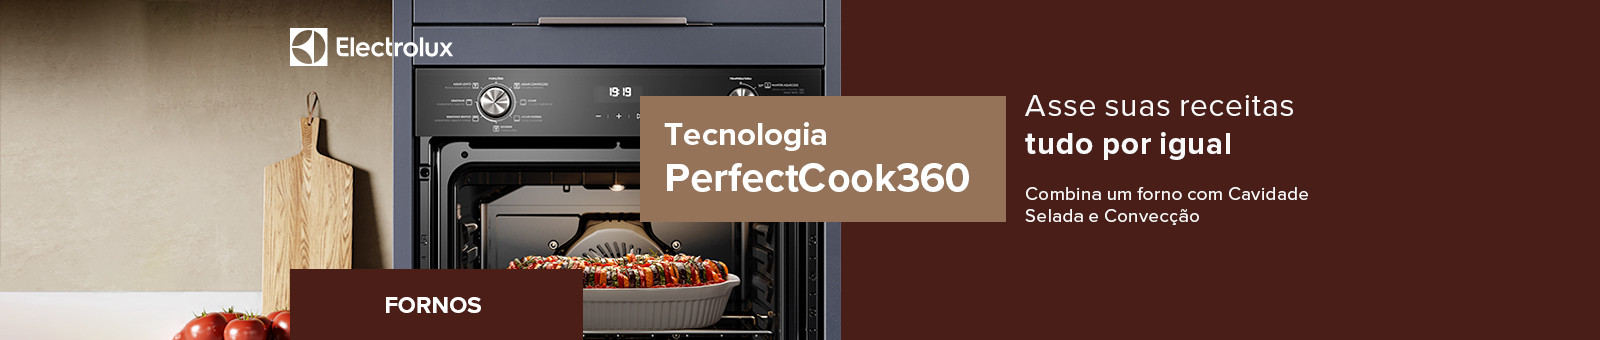 Electrolux. Fornos. Tecnologia PerfectCook360. Asse suas receitas tudo por igual. Combine um forno com Cavidade selada e convecção.